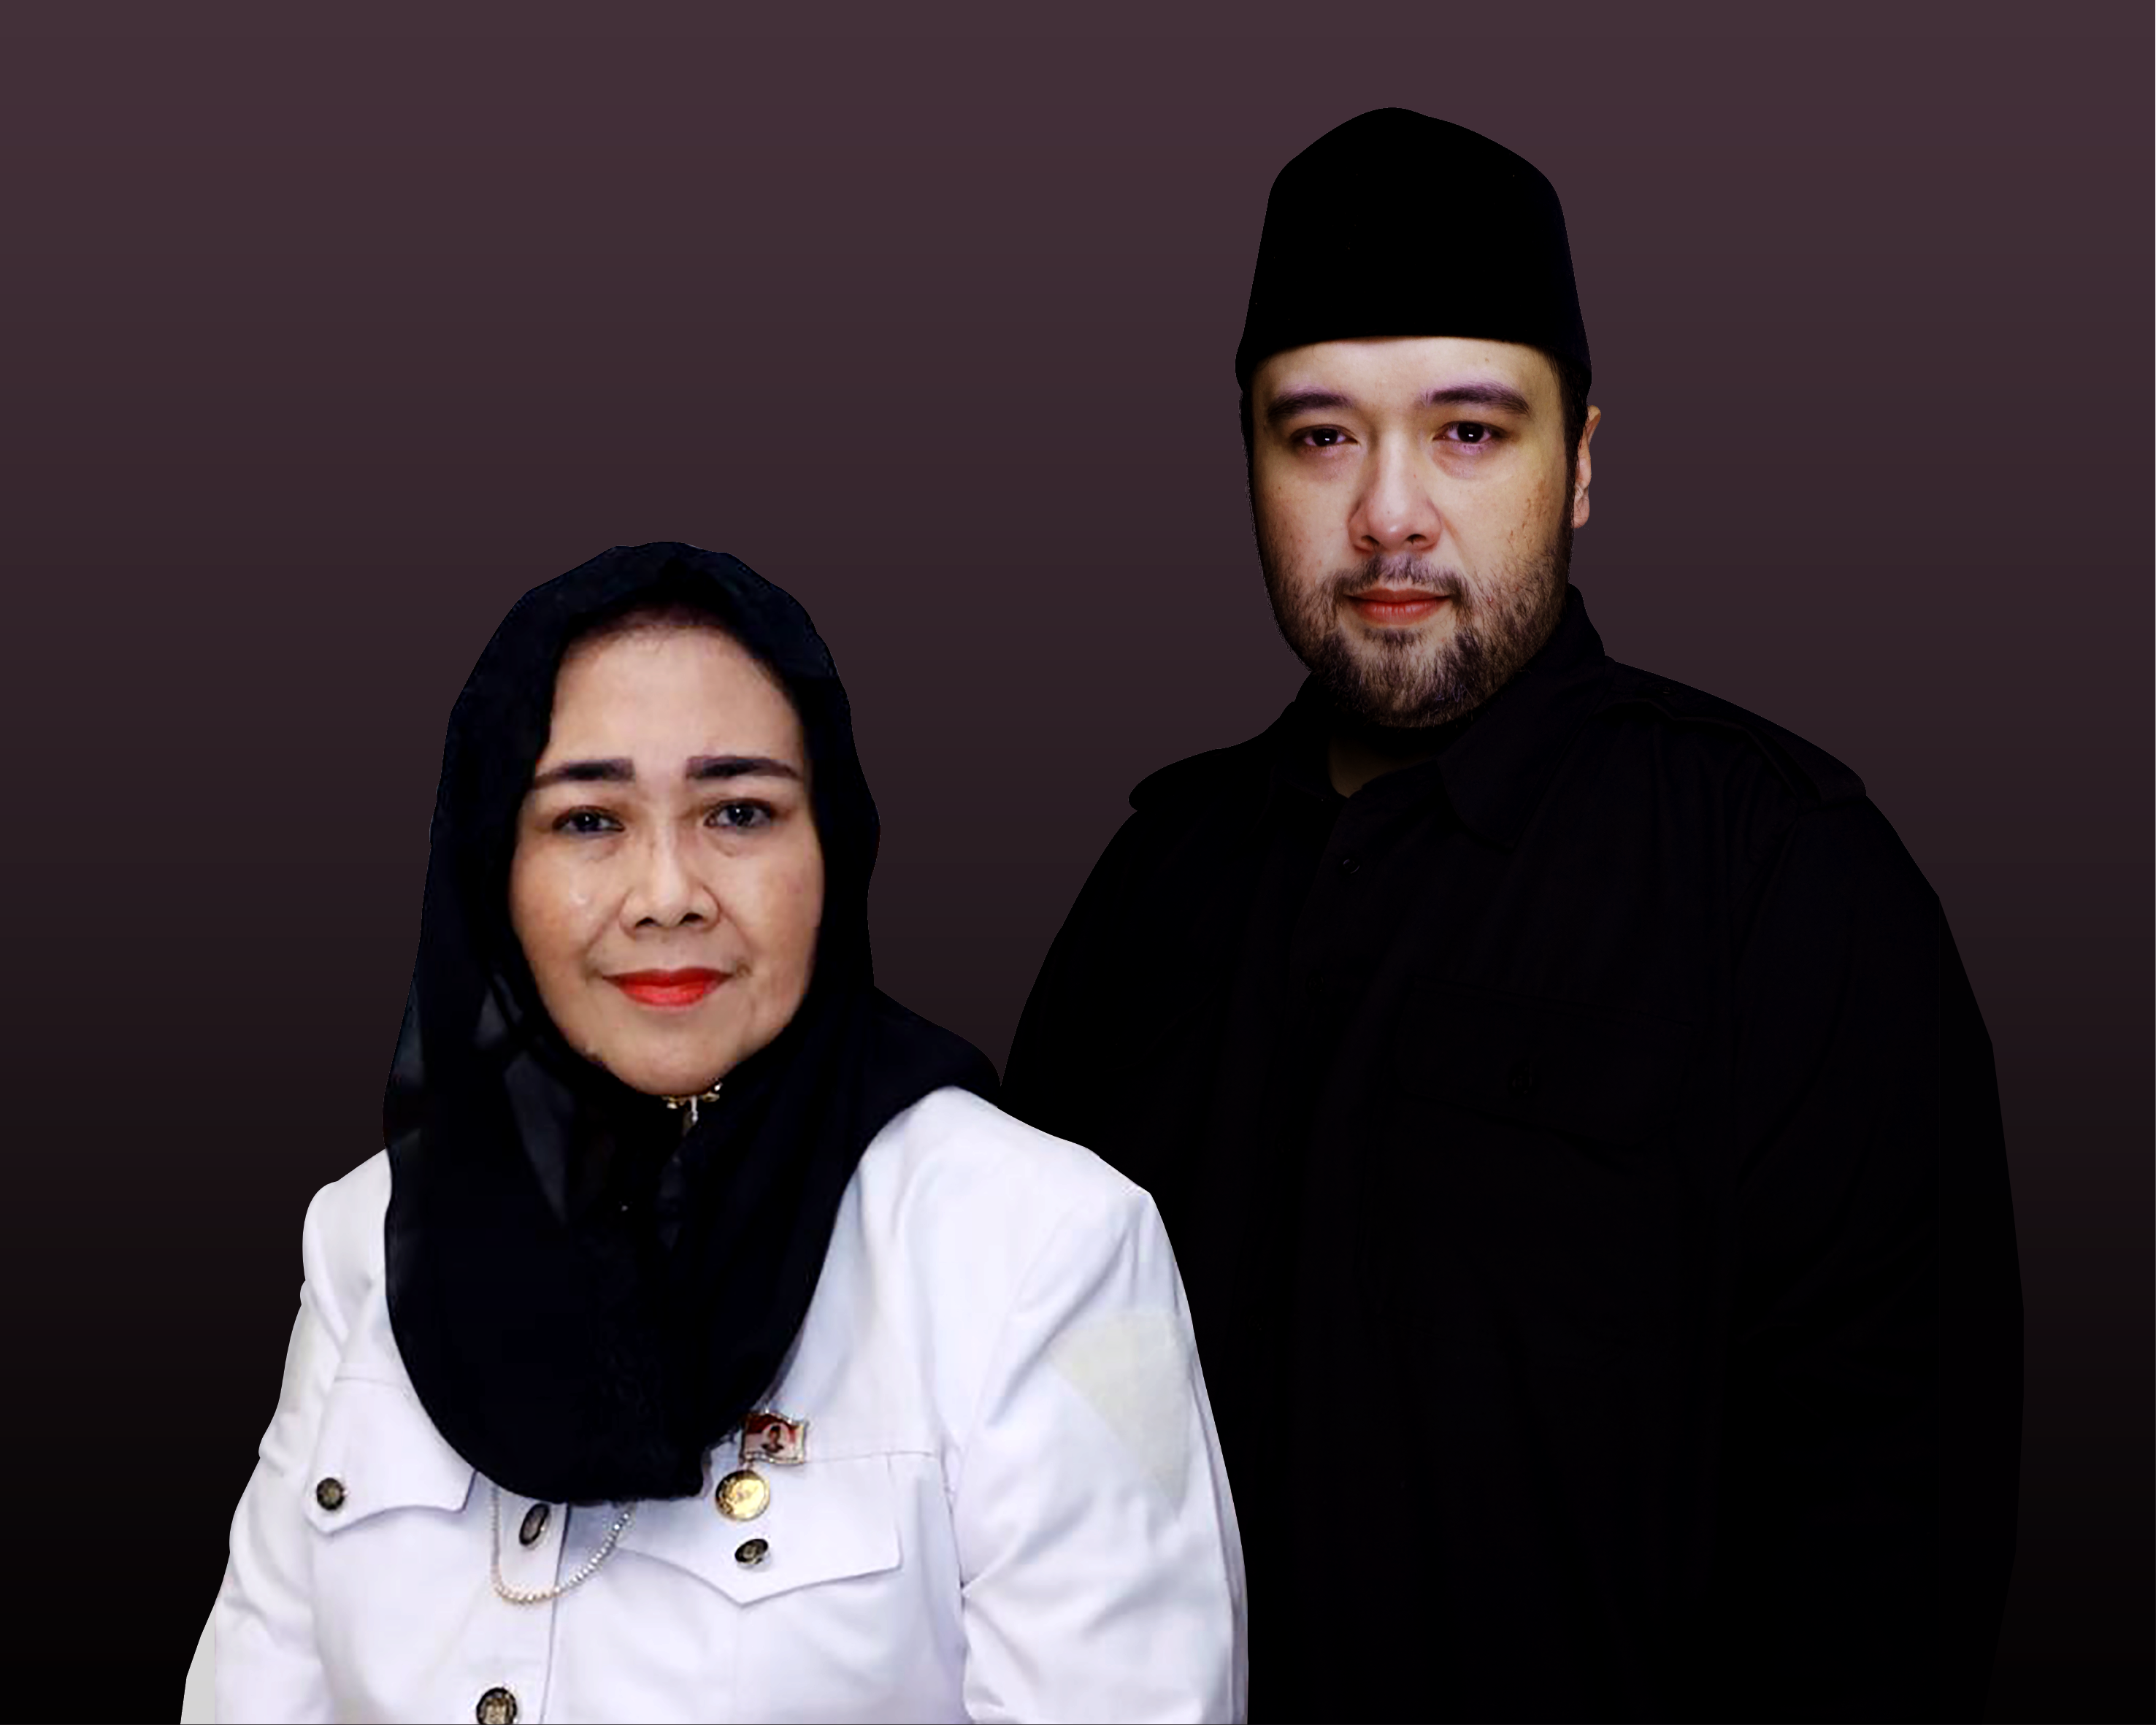 Mahardika Soekarno: Partai Perkasa Tidak Ada Hubungannya dengan Almarhumah Ibu Saya, Rachmawati Soekarnoputri